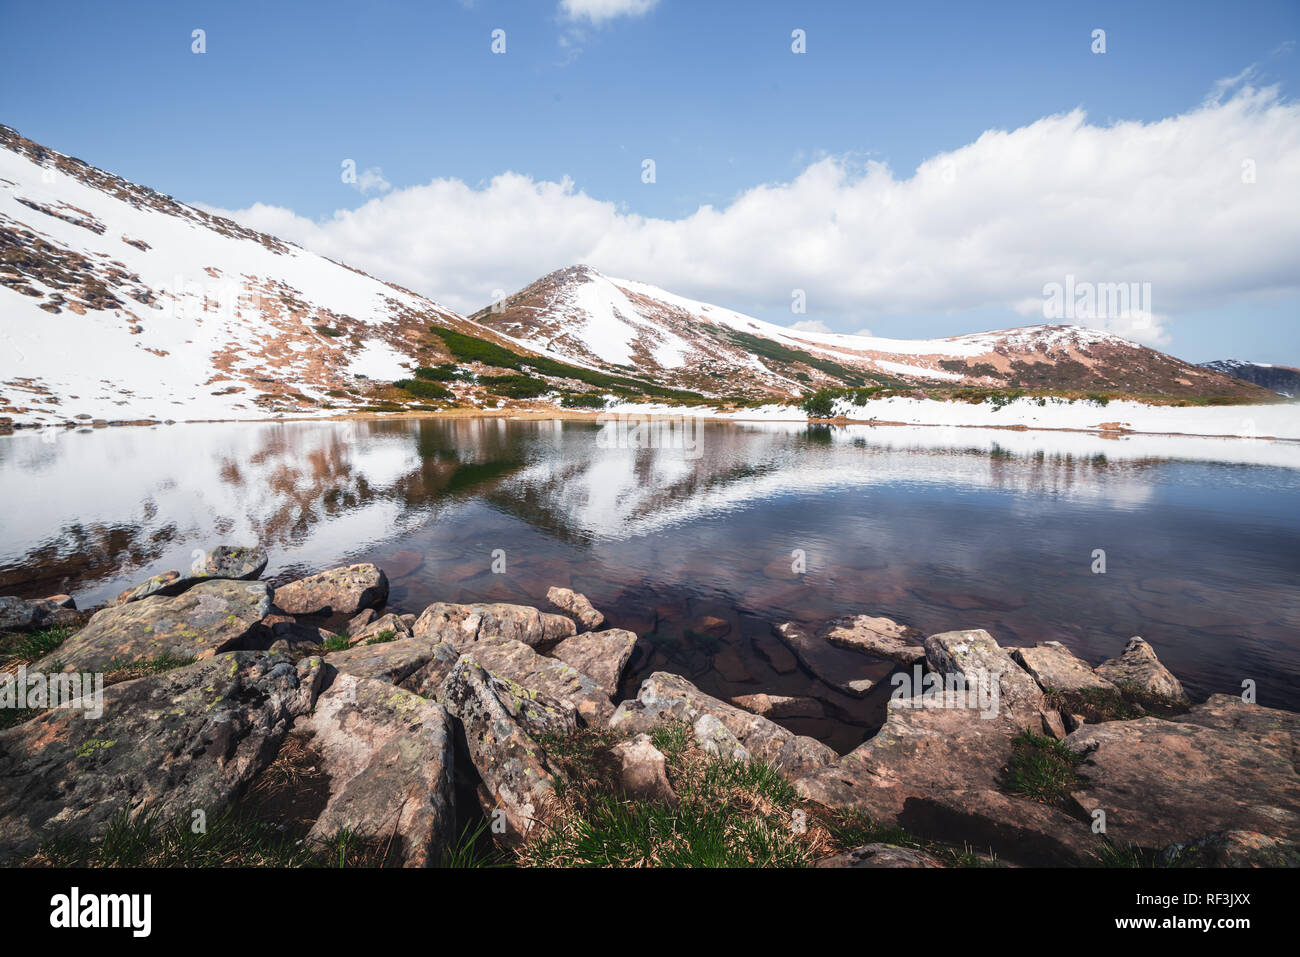 Spring Mountain Lake, con aguas claras y piedras rojas. El pintoresco paisaje de invierno con cerros nevados bajo un cielo azul Foto de stock